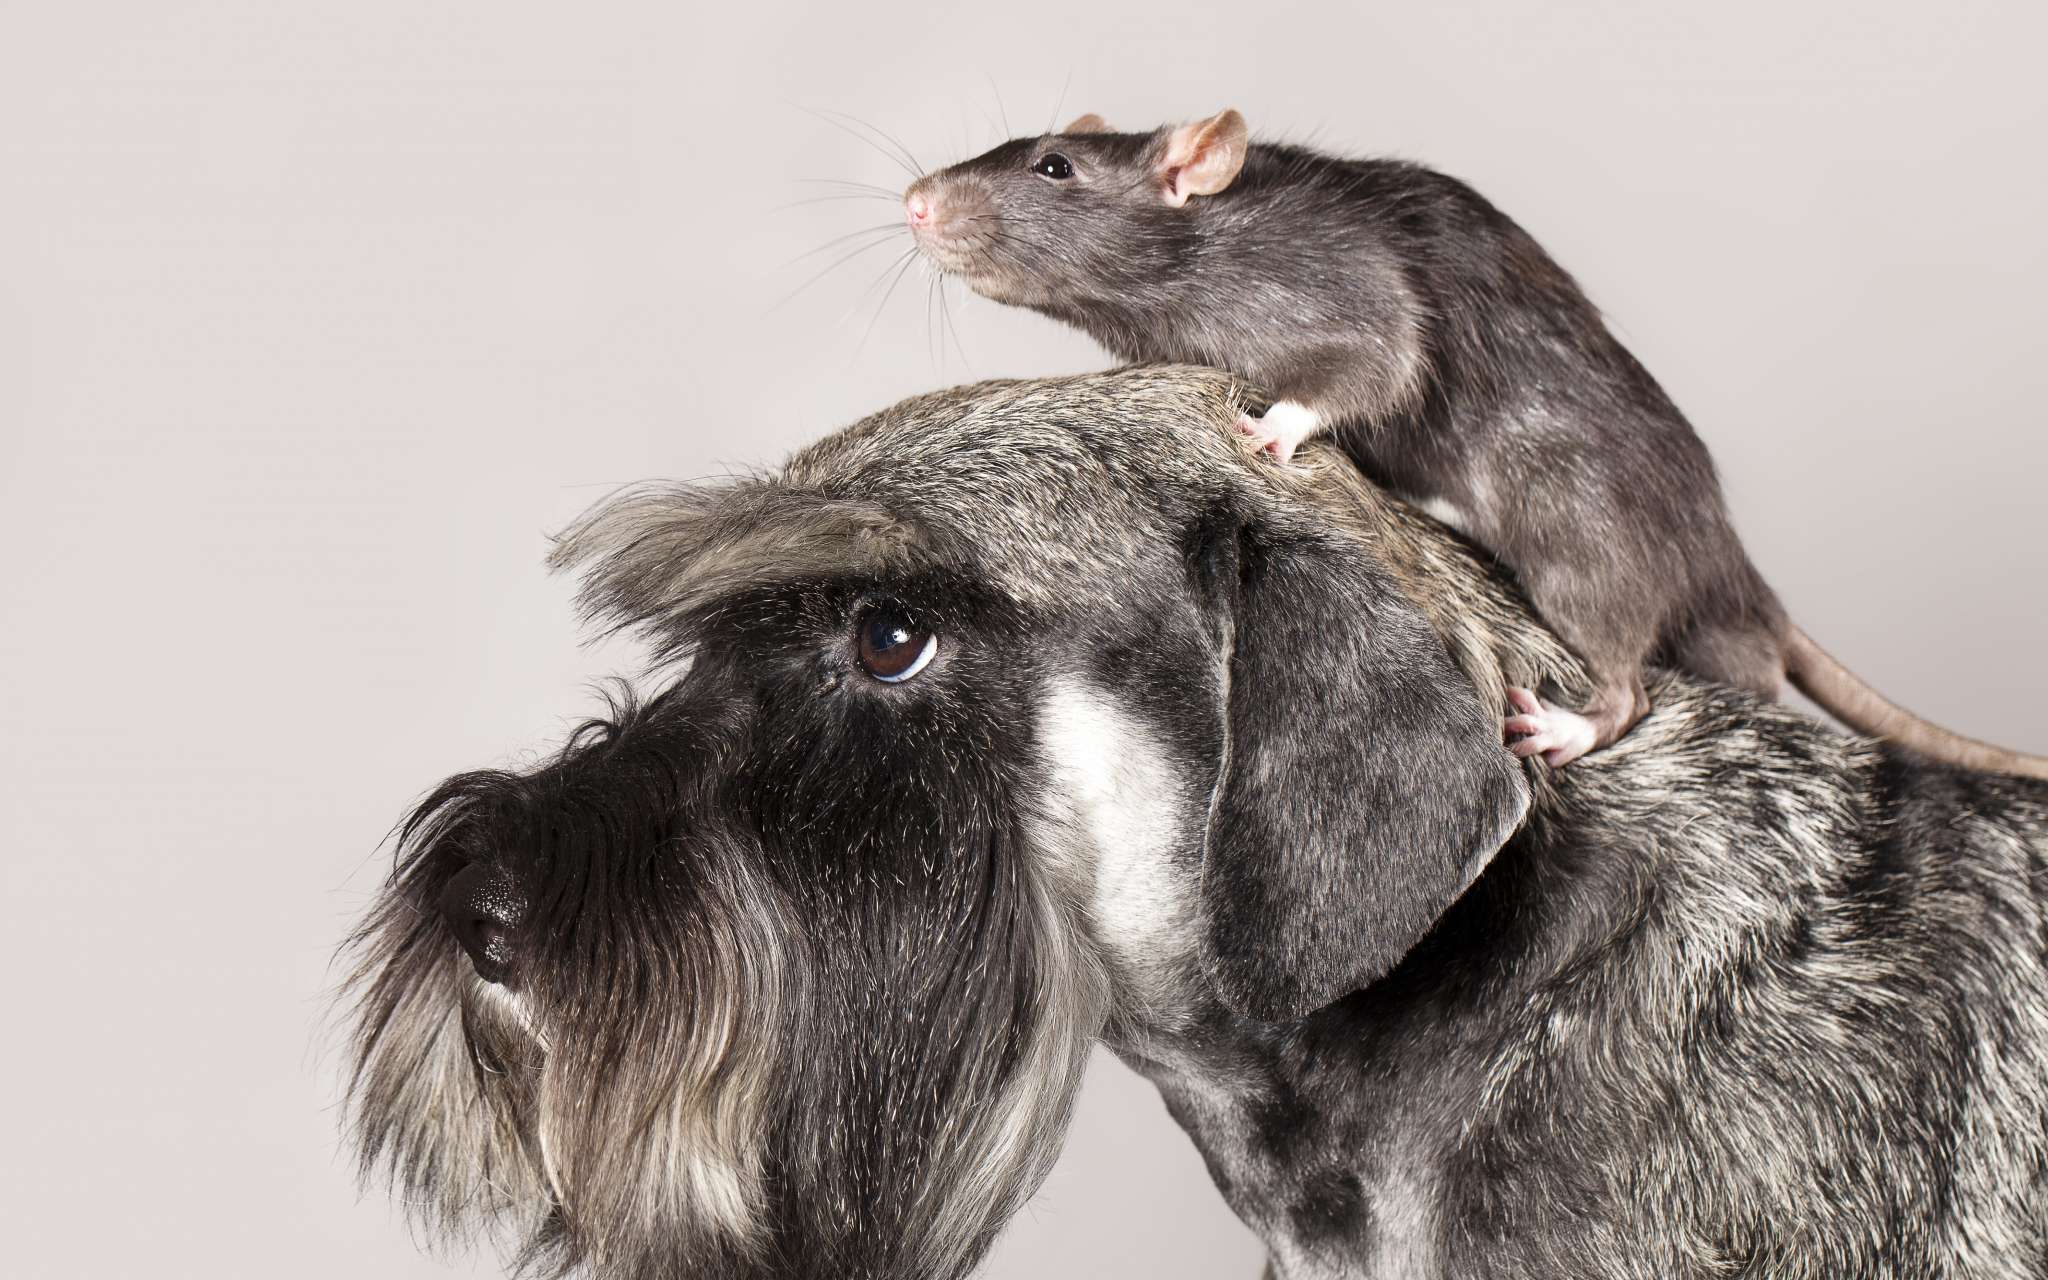 Élimination d'odeurs de rats, rongeurs ou carnassiers morts